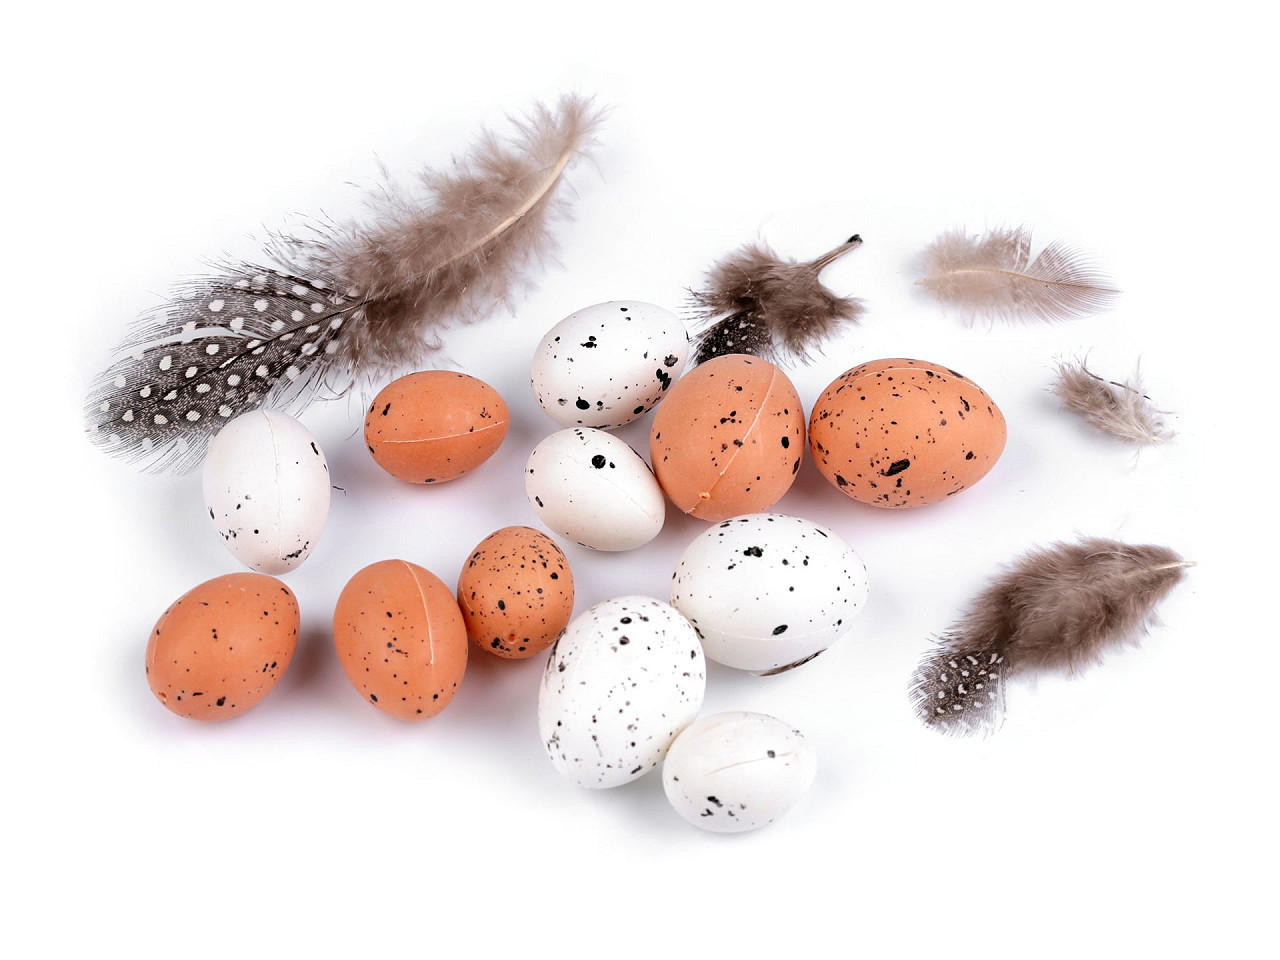 Dekorační křepelčí vajíčka k aranžování s peřím, barva přírodní stř. bílá